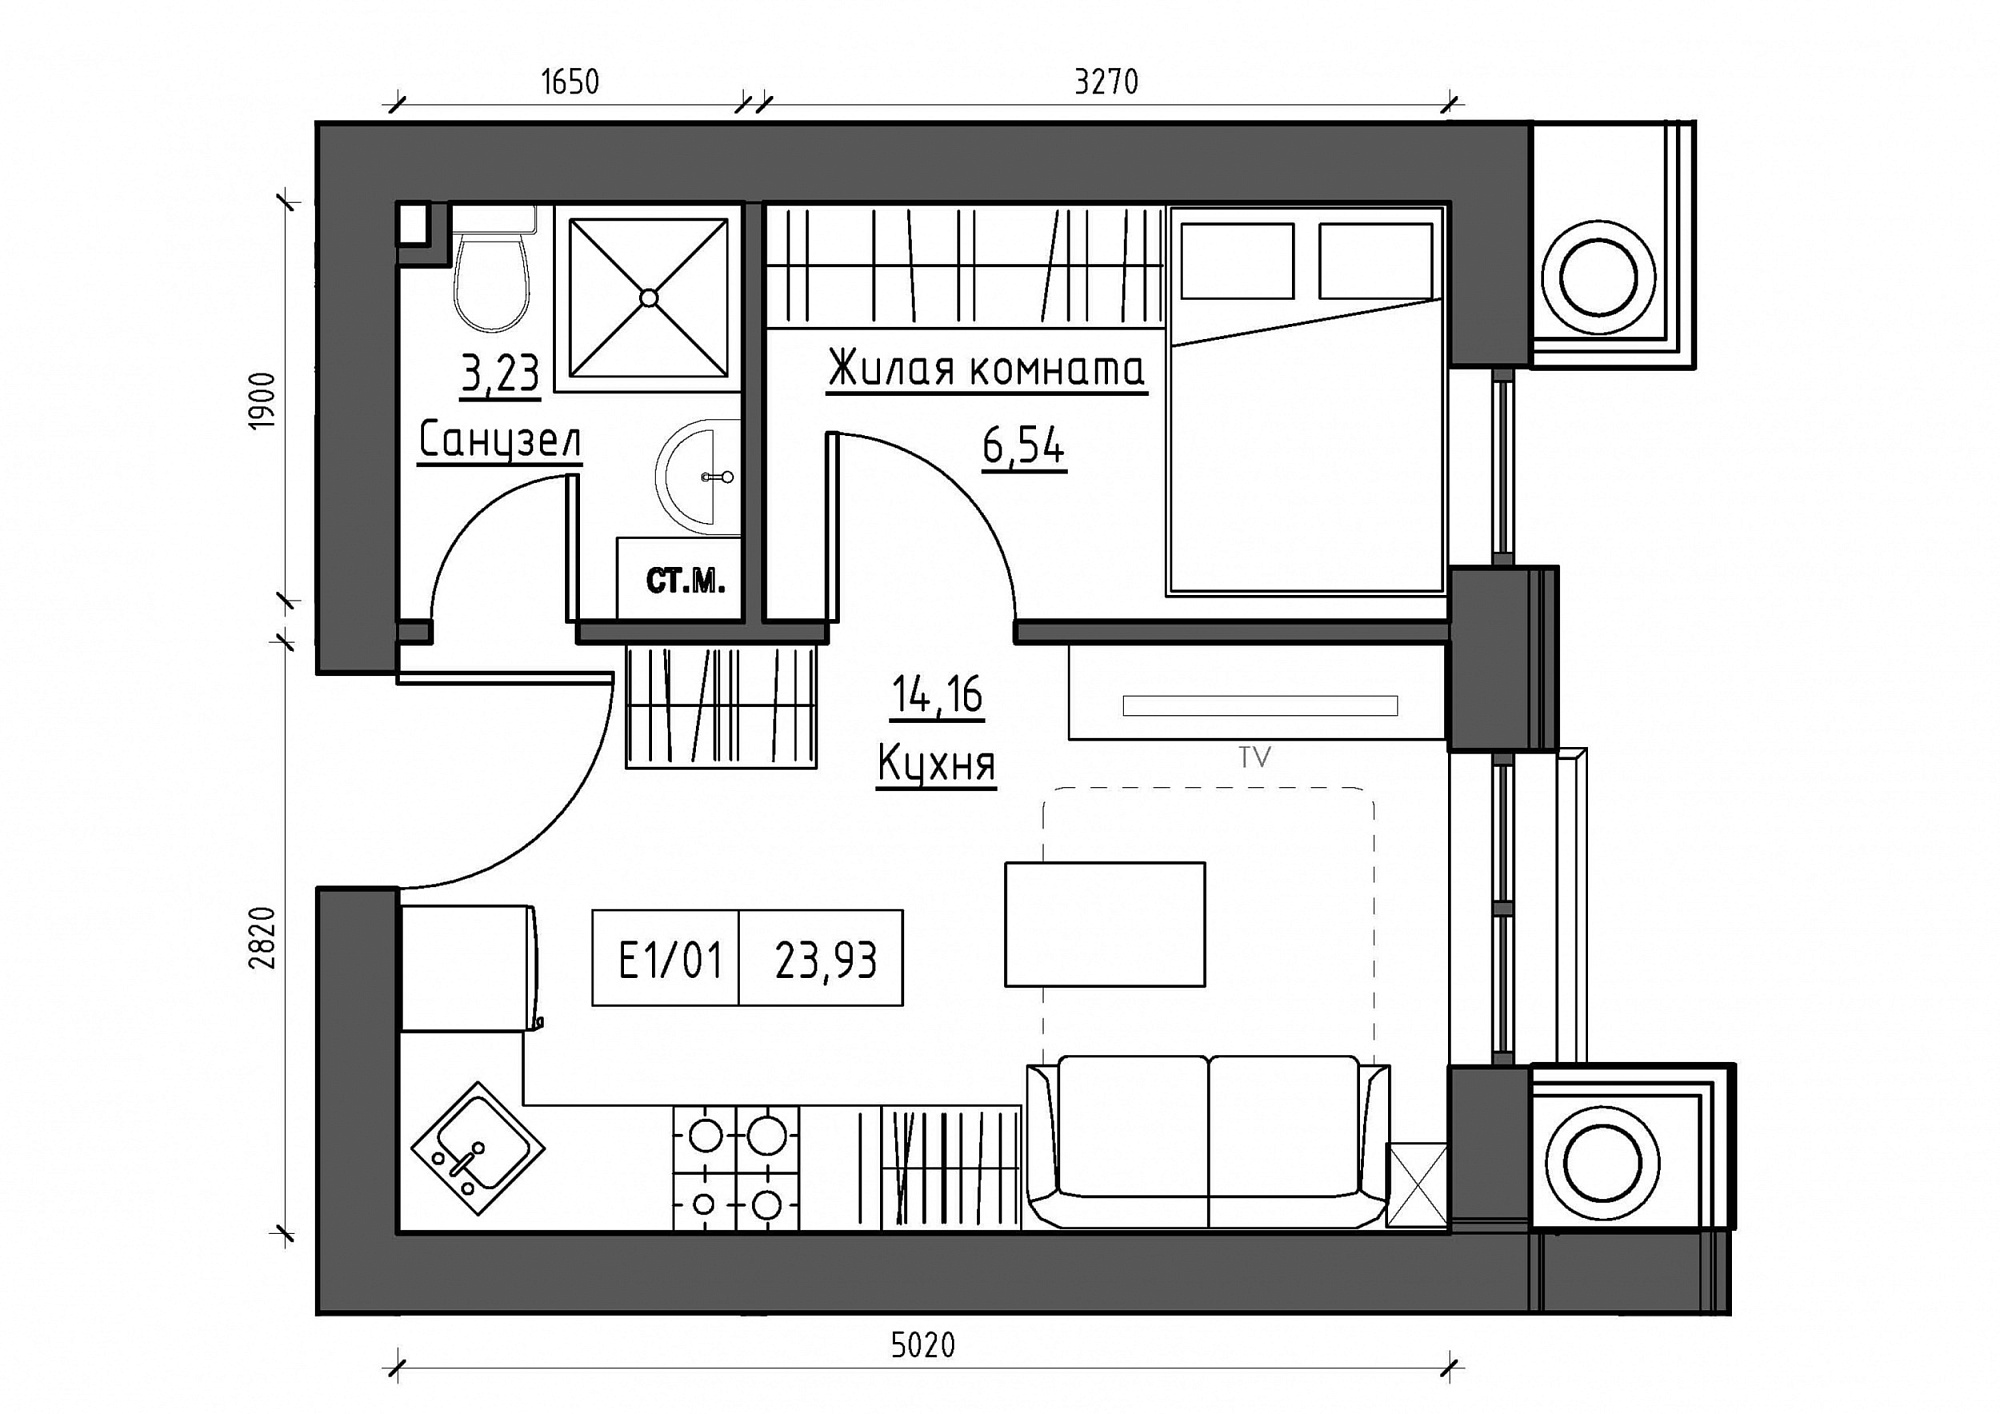 Планування 1-к квартира площею 23.93м2, KS-011-03/0004.